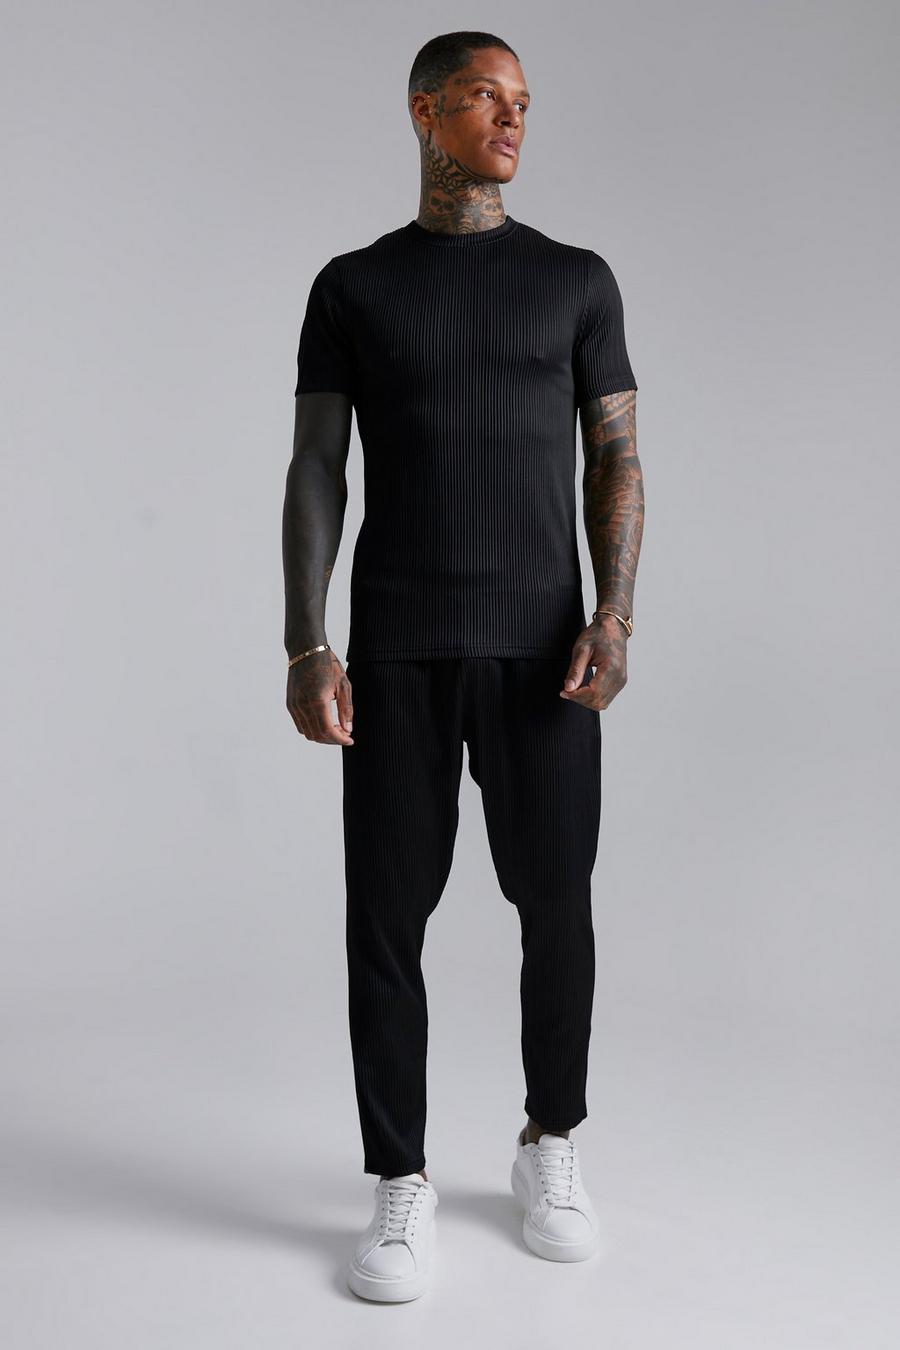 Conjunto de pantalón deportivo y camisa plisada ajustada al músculo, Black nero